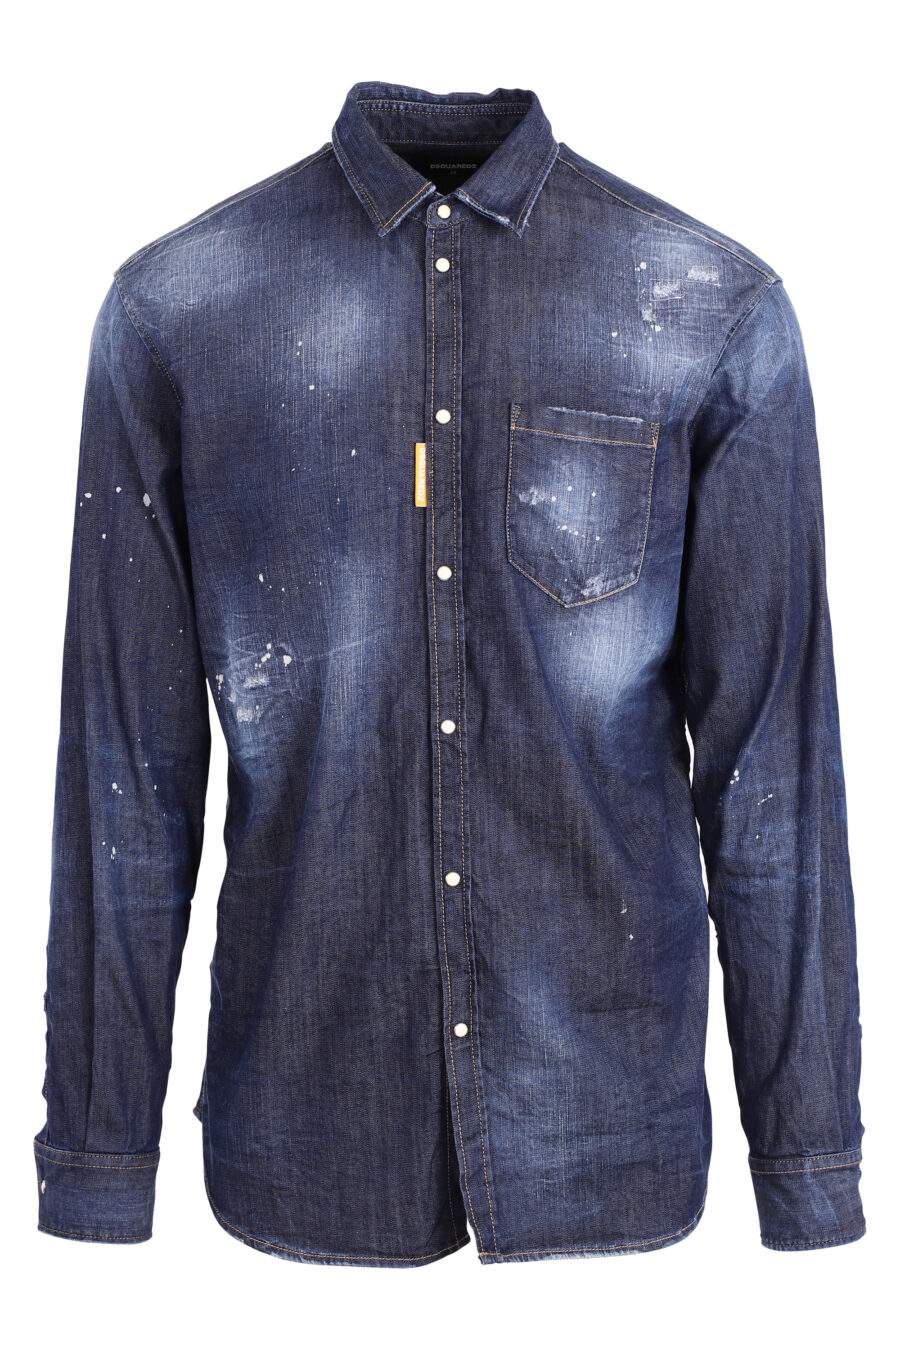 Camisa vaquera azul con pintura blanca "icon splash" - IMG 4714